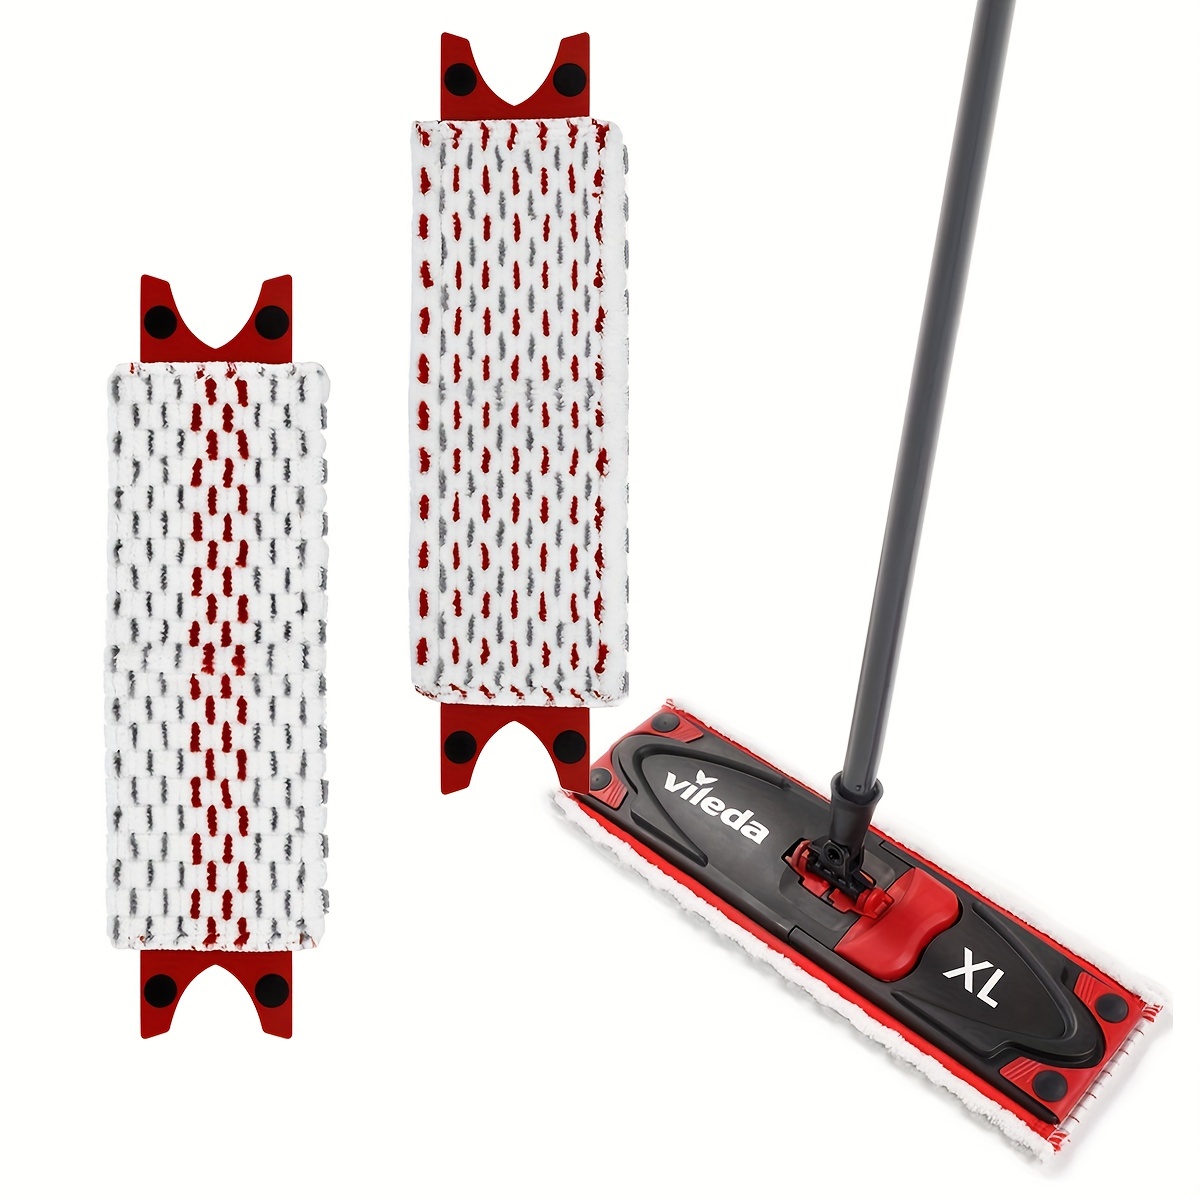 Turbo Mops Reusable Floor Mop Pads, 2 Pack 12-Inch Microfiber Mop Refills